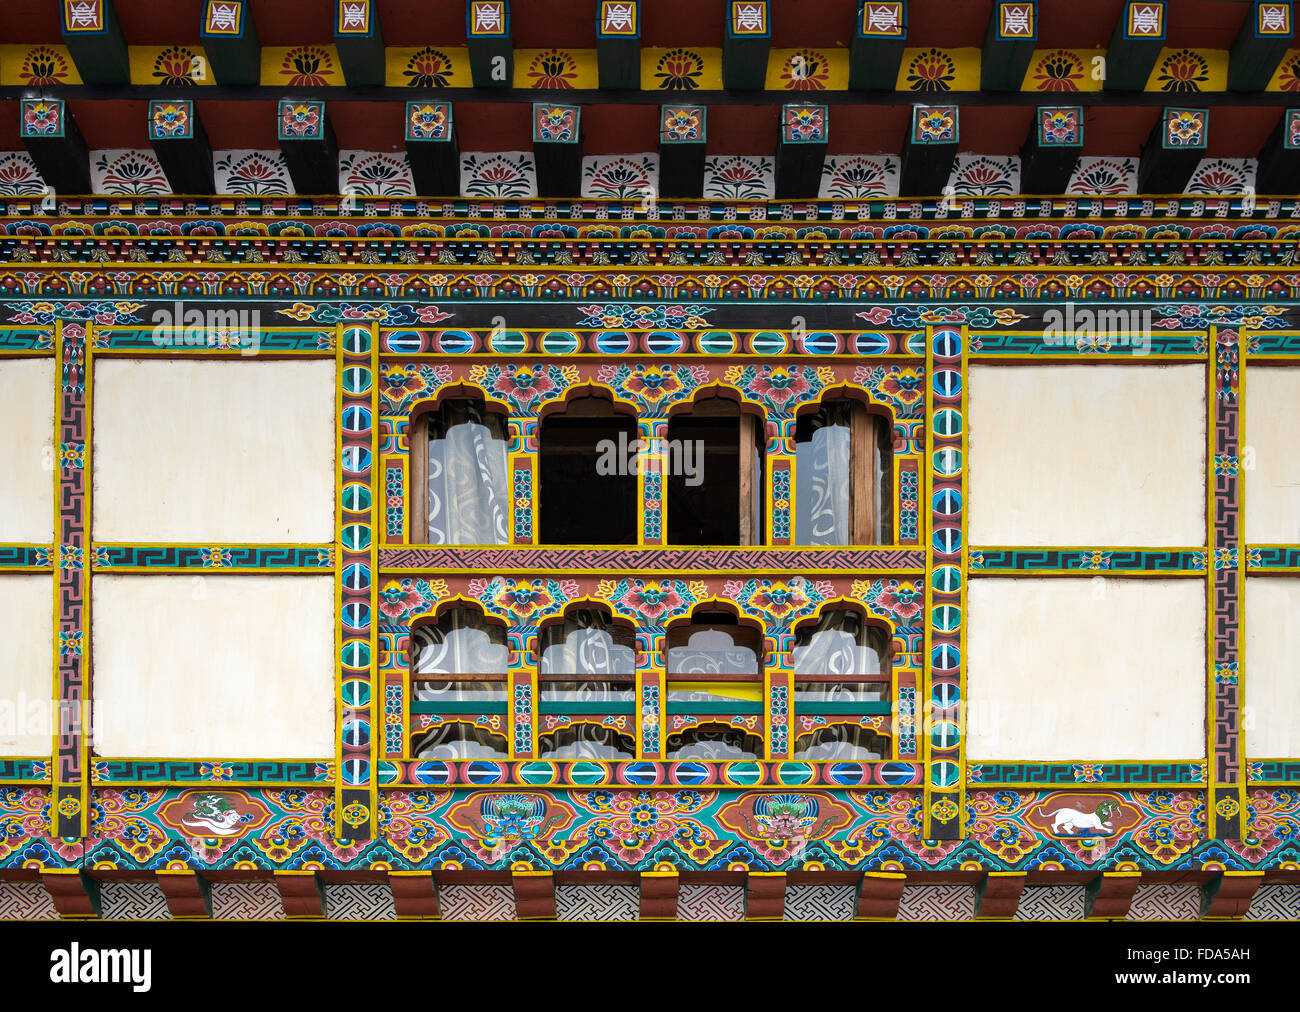 Farbenfrohe Dekorationen auf Fenstern und Türen, traditionelle bhutanesische Architektur, Lobesa, Bhutan Stockfoto